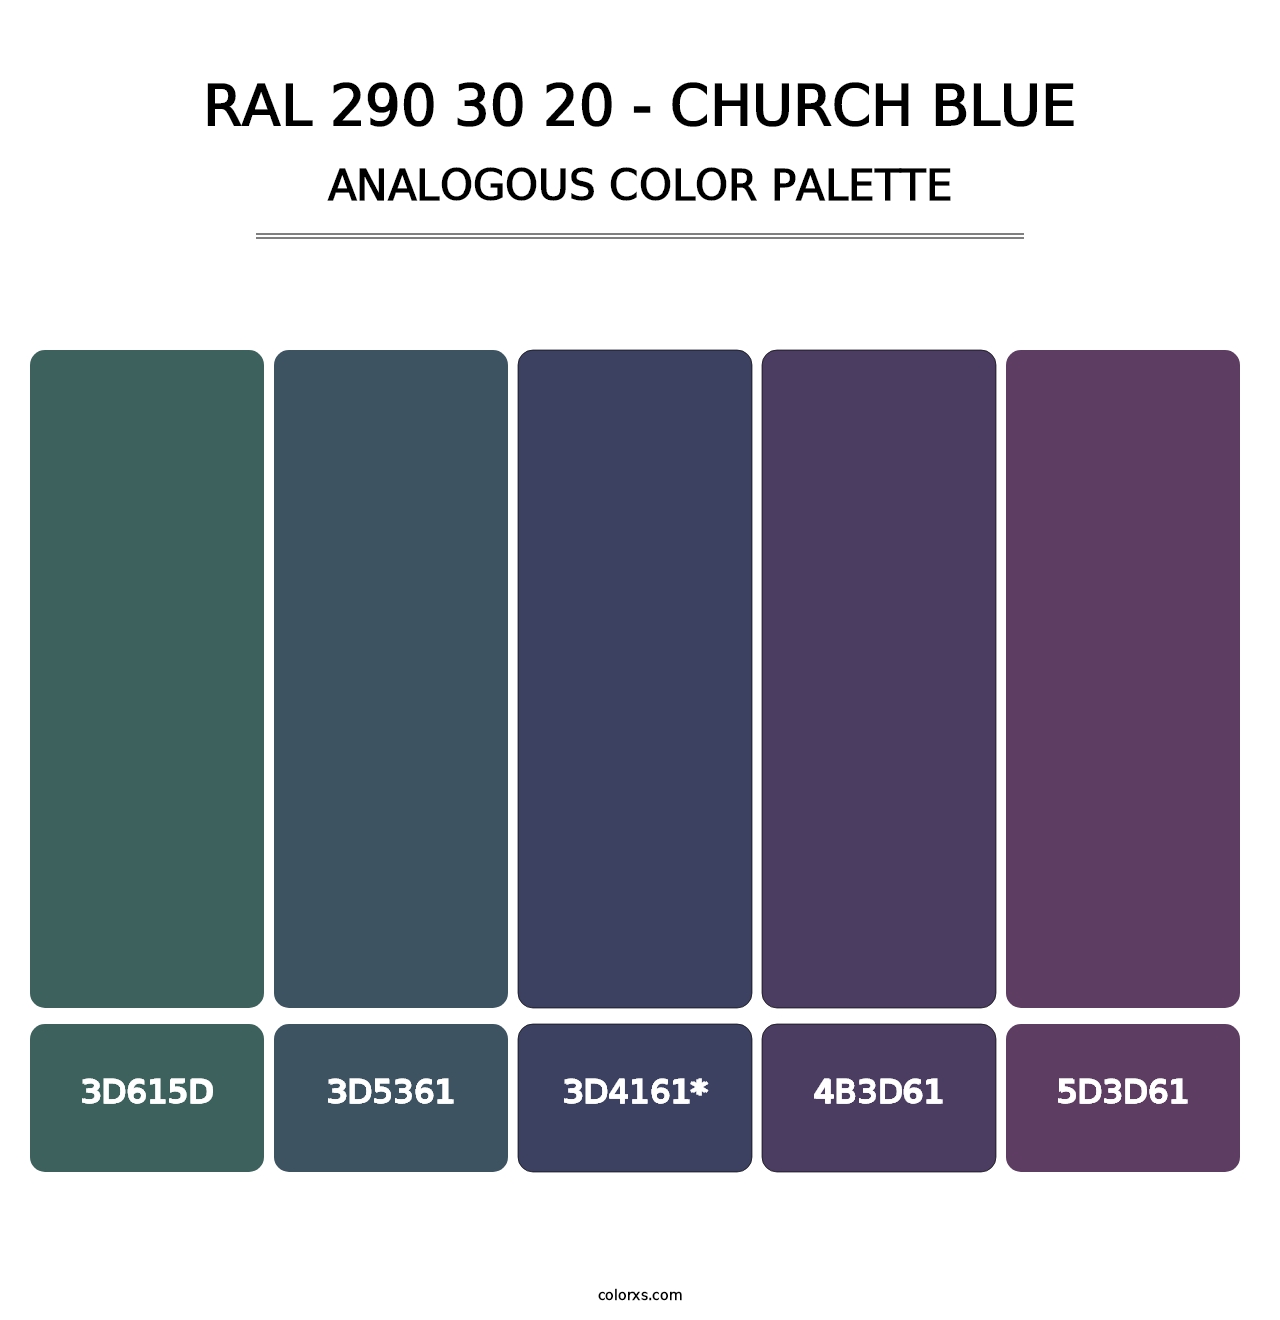 RAL 290 30 20 - Church Blue - Analogous Color Palette